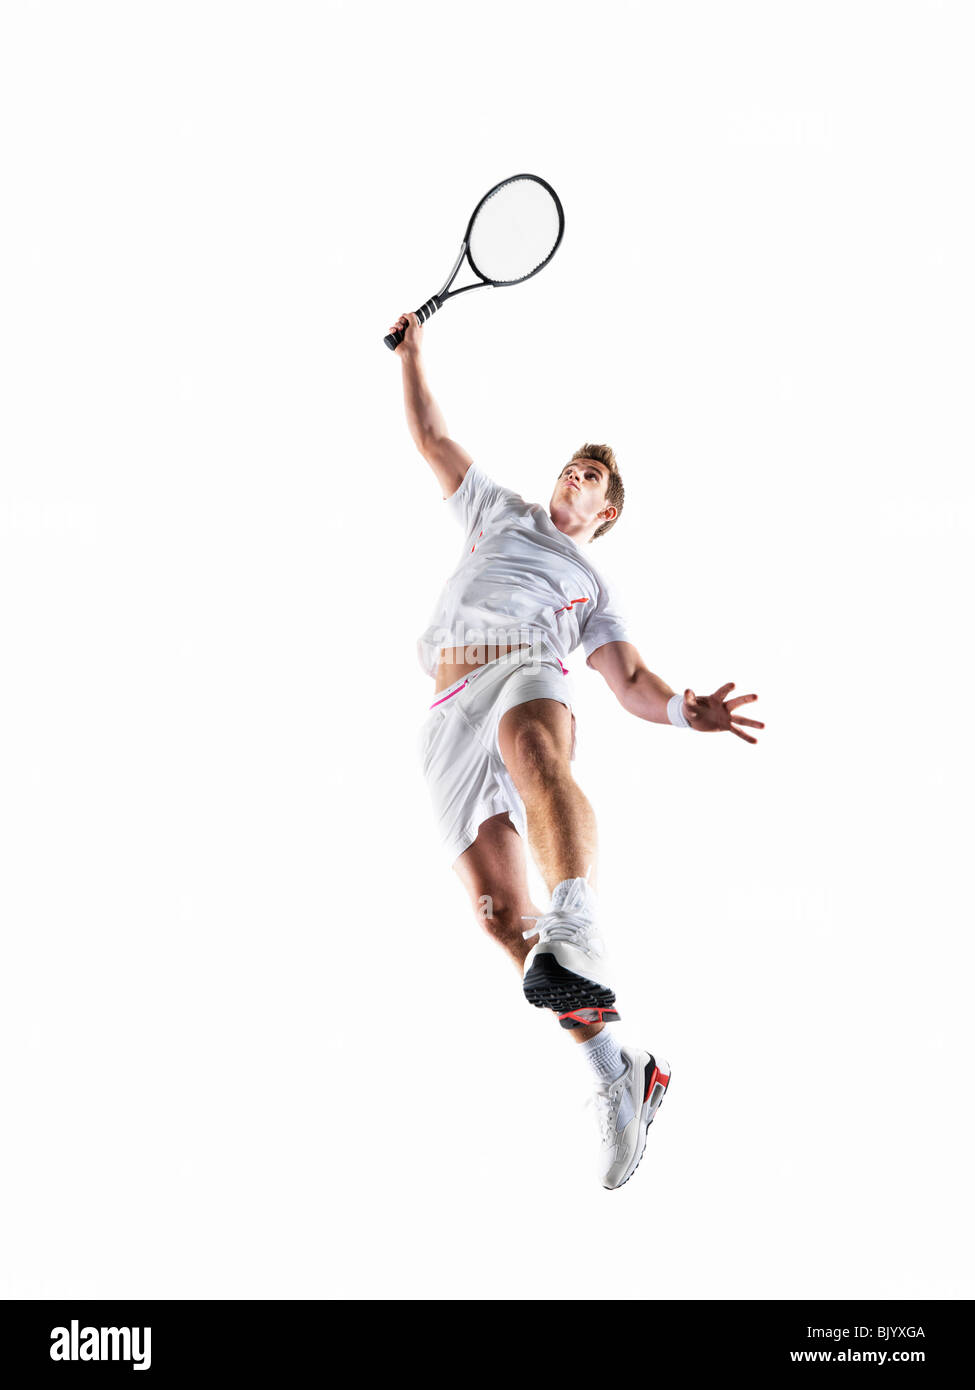 Man playing tennis Stock Photo